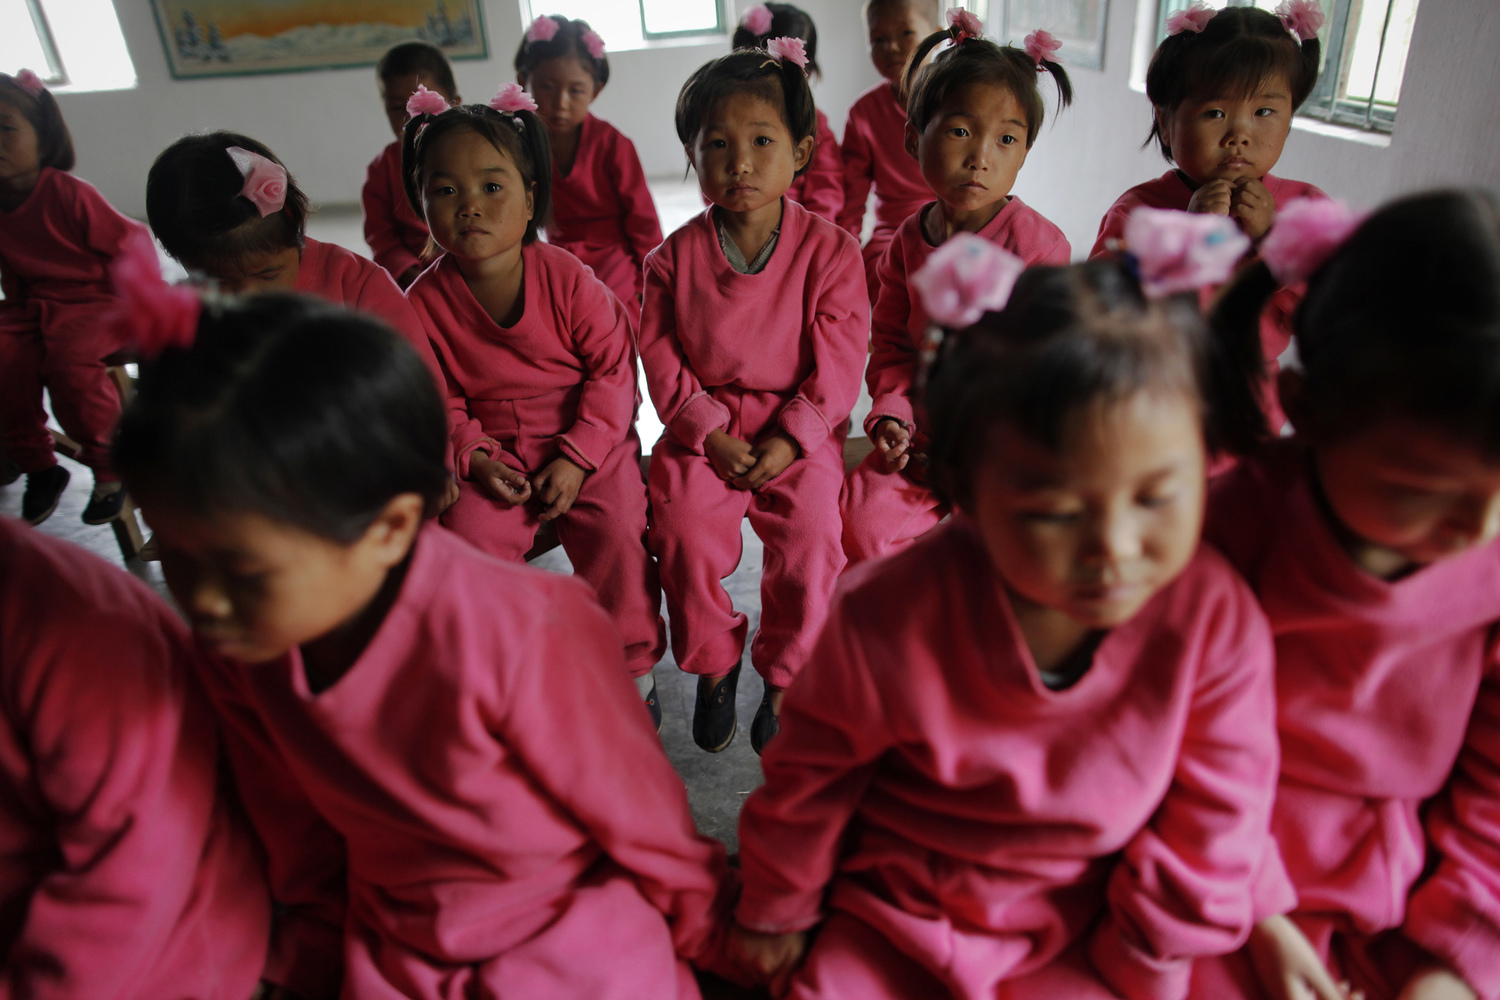 Bambini in un orfanotrofio nella provincia di North Hwanghae, Corea del Nord, 29 settembre 2011. REUTERS/Damir Sagolj